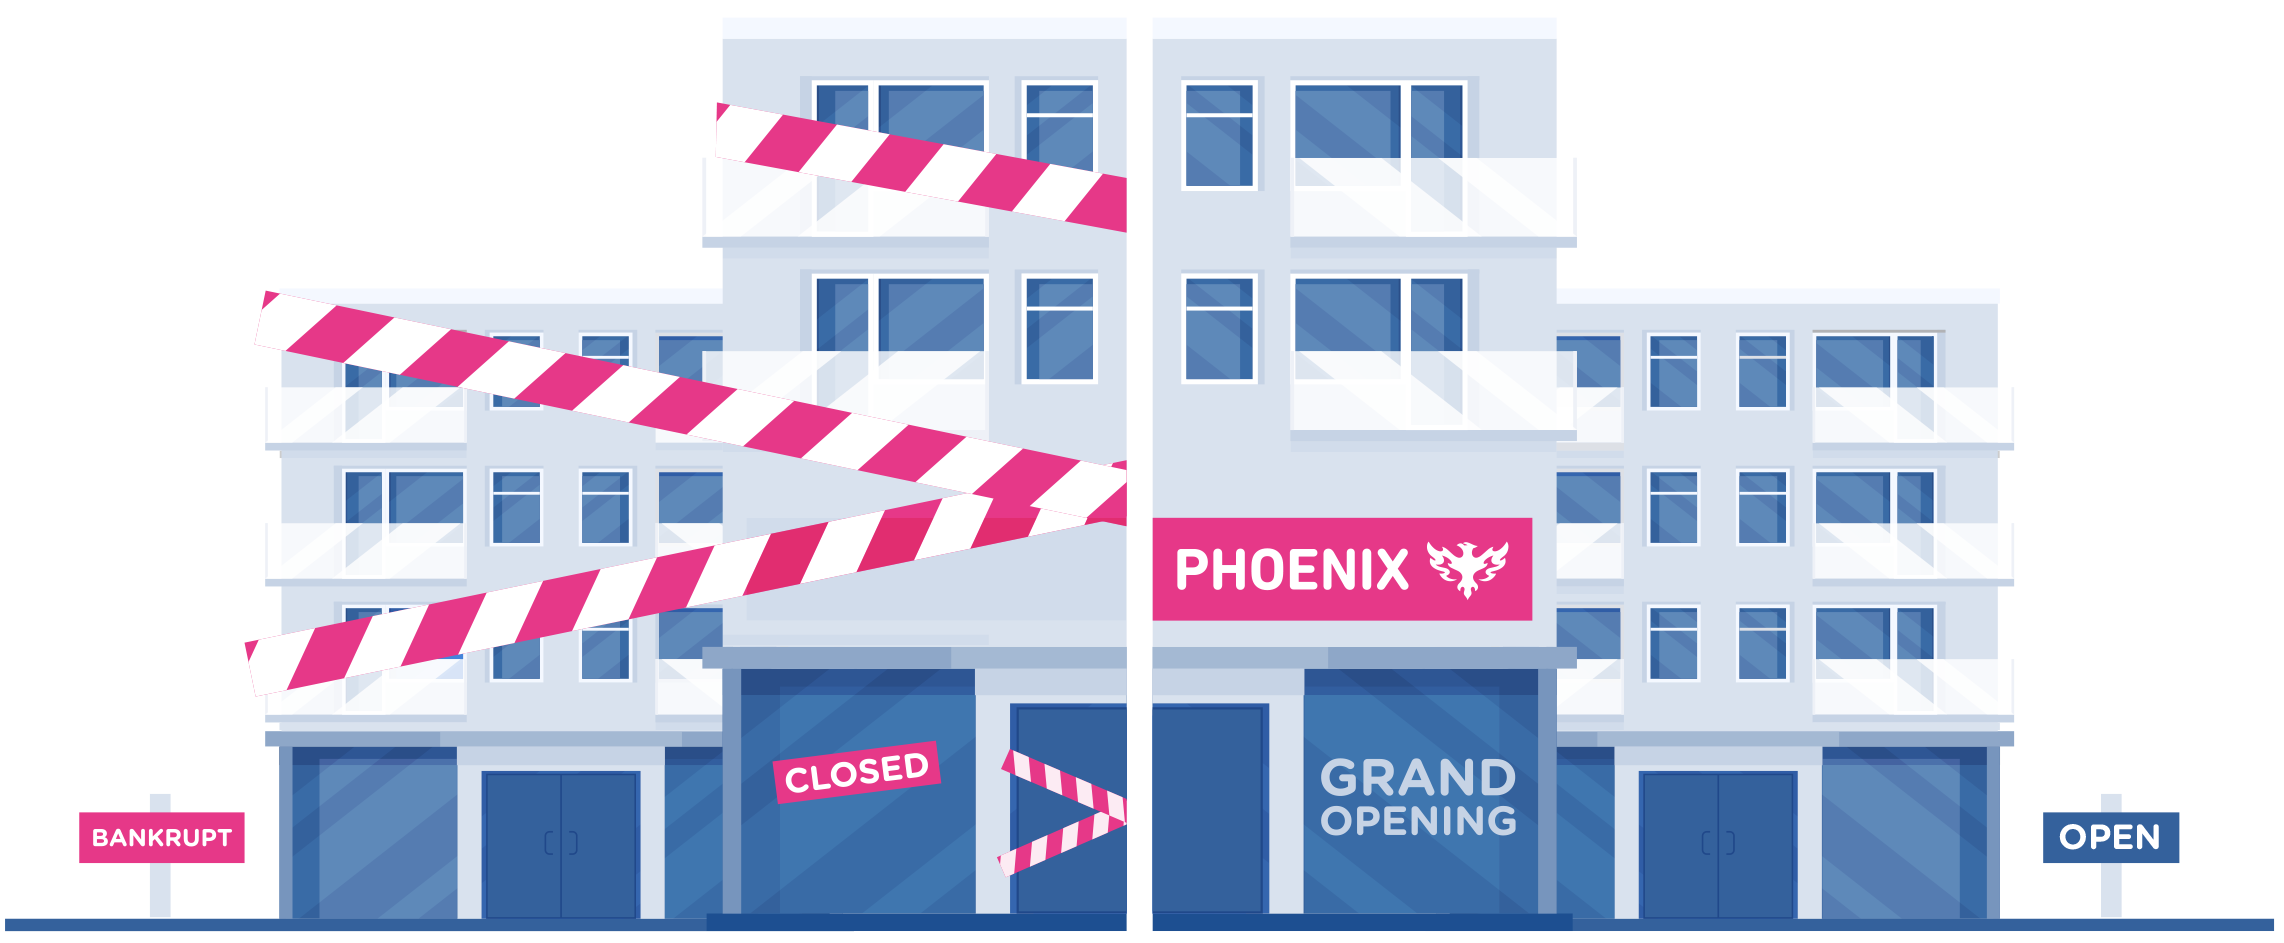 Phoenix business building image